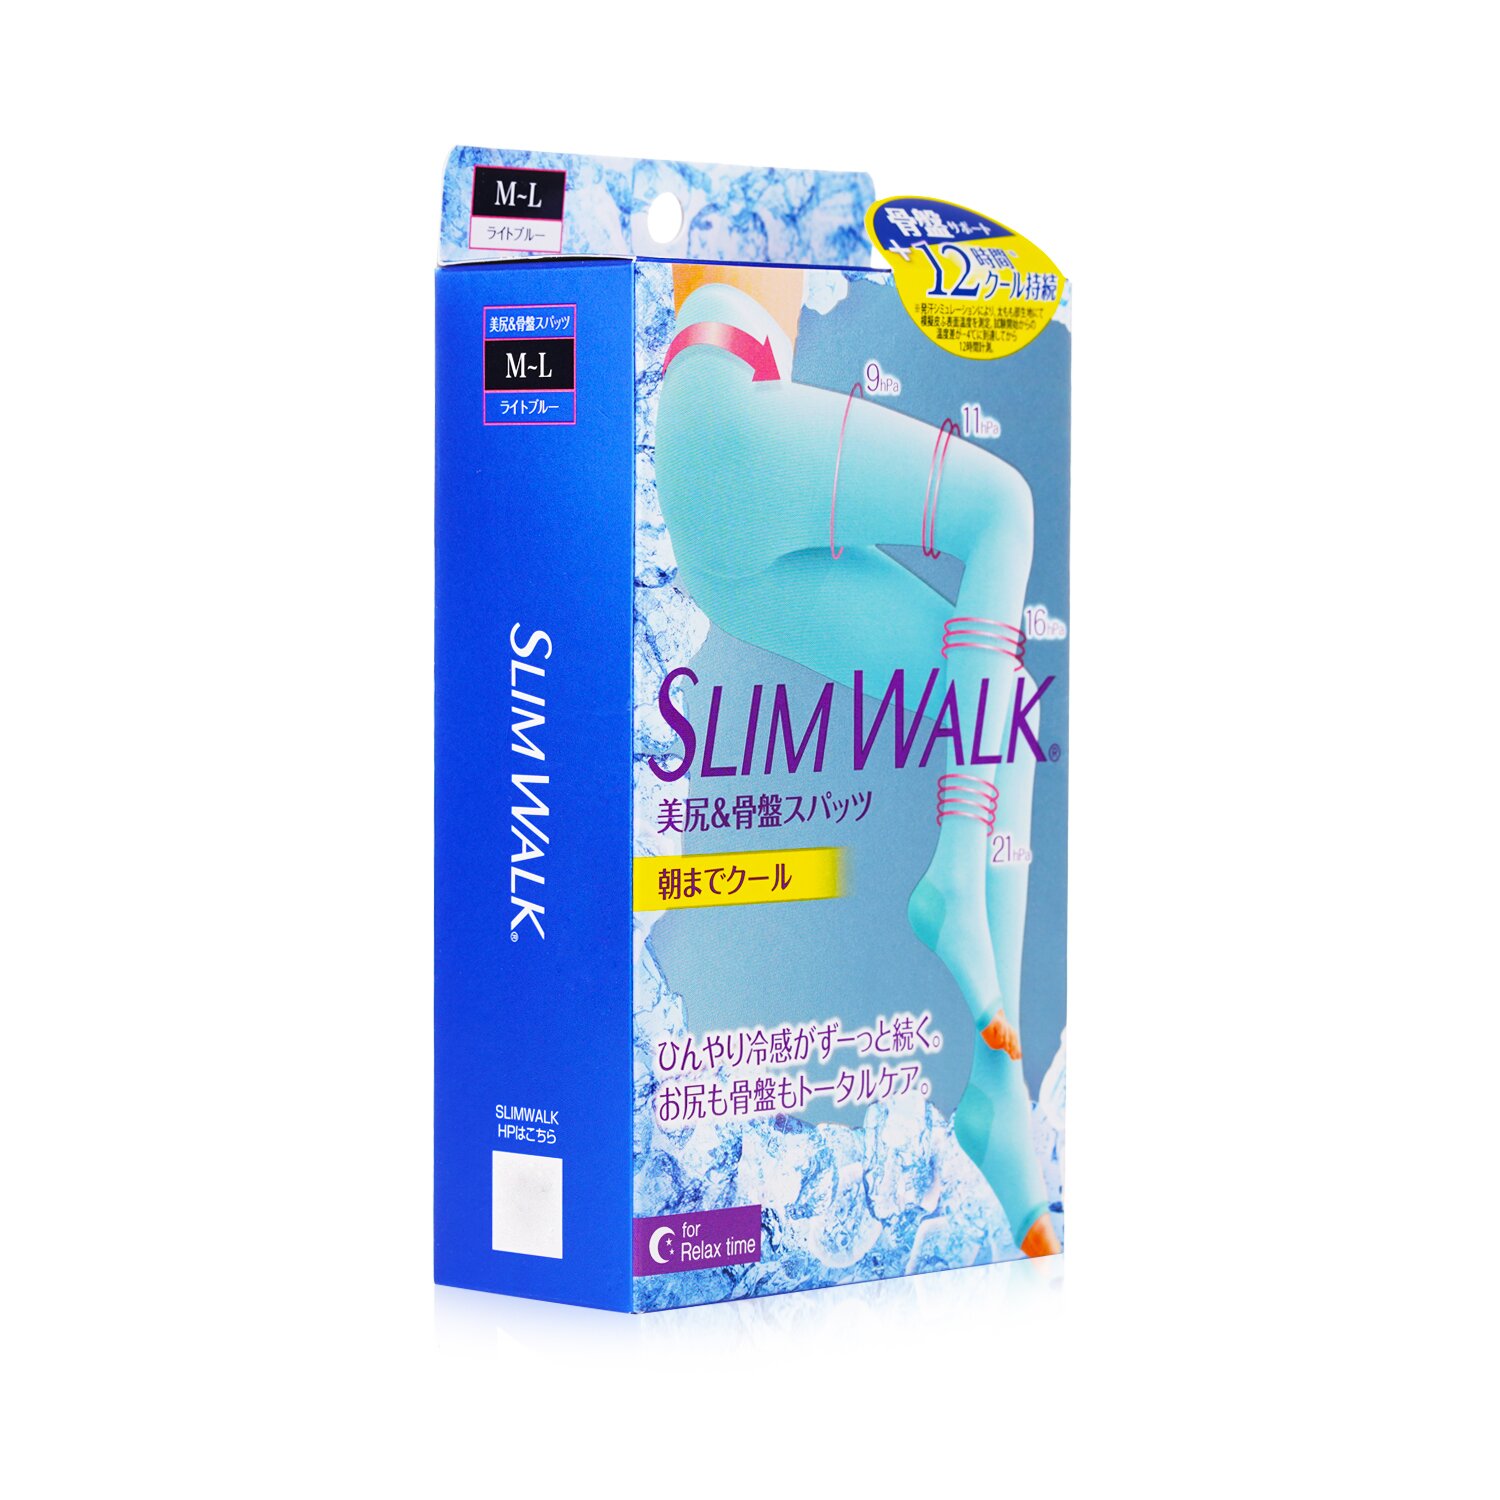 SlimWalk Cooling Compression Sleep Pantyhose 1pair